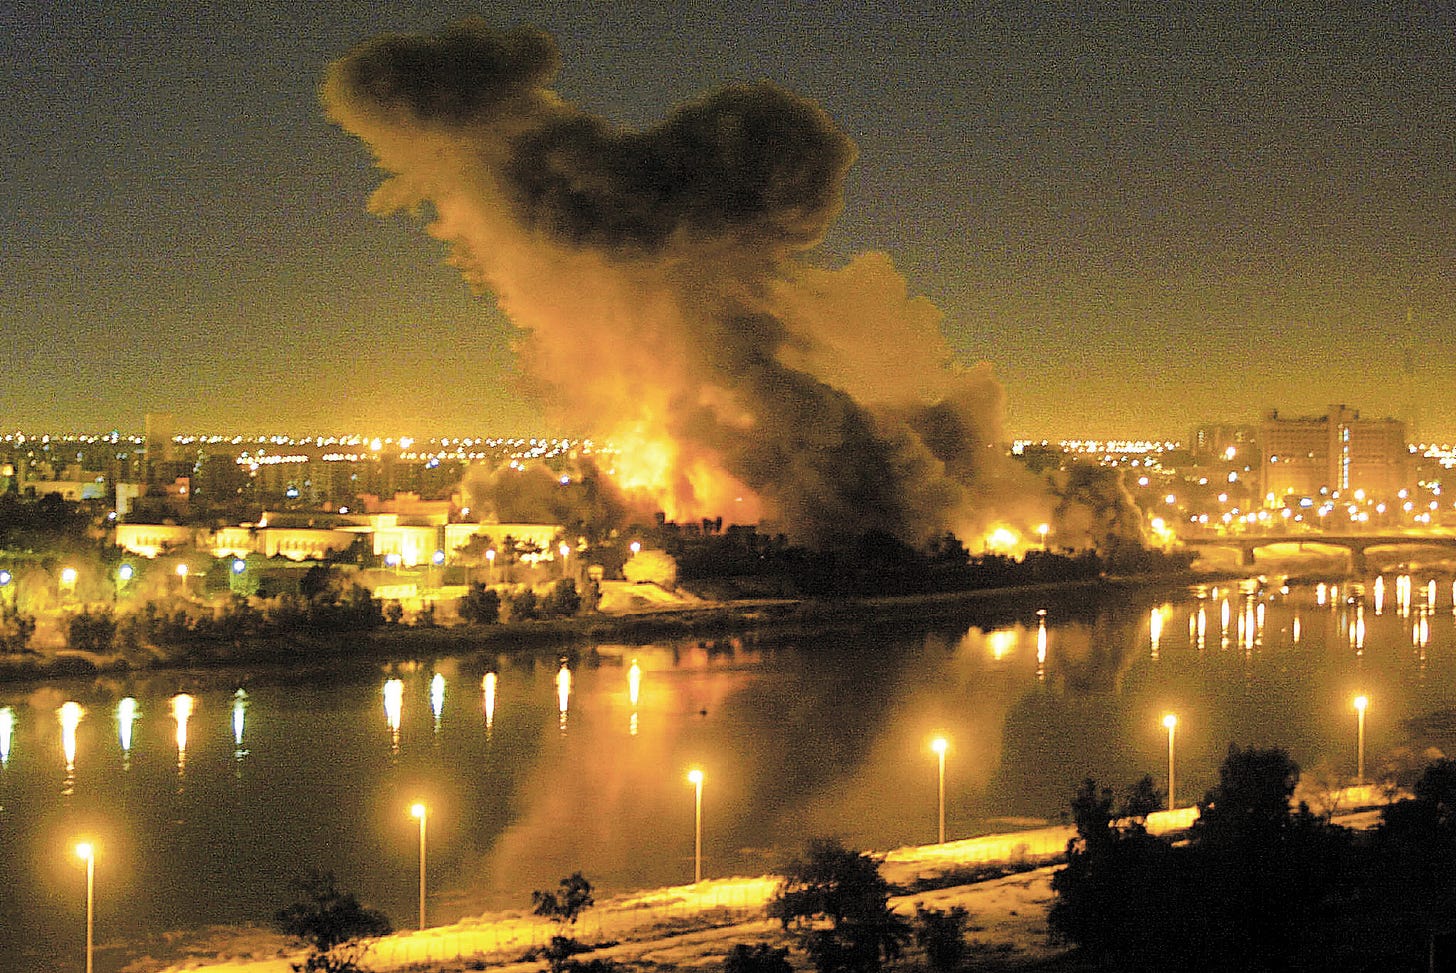 Cronología: 20 años de la invasión de Estados Unidos en Irak